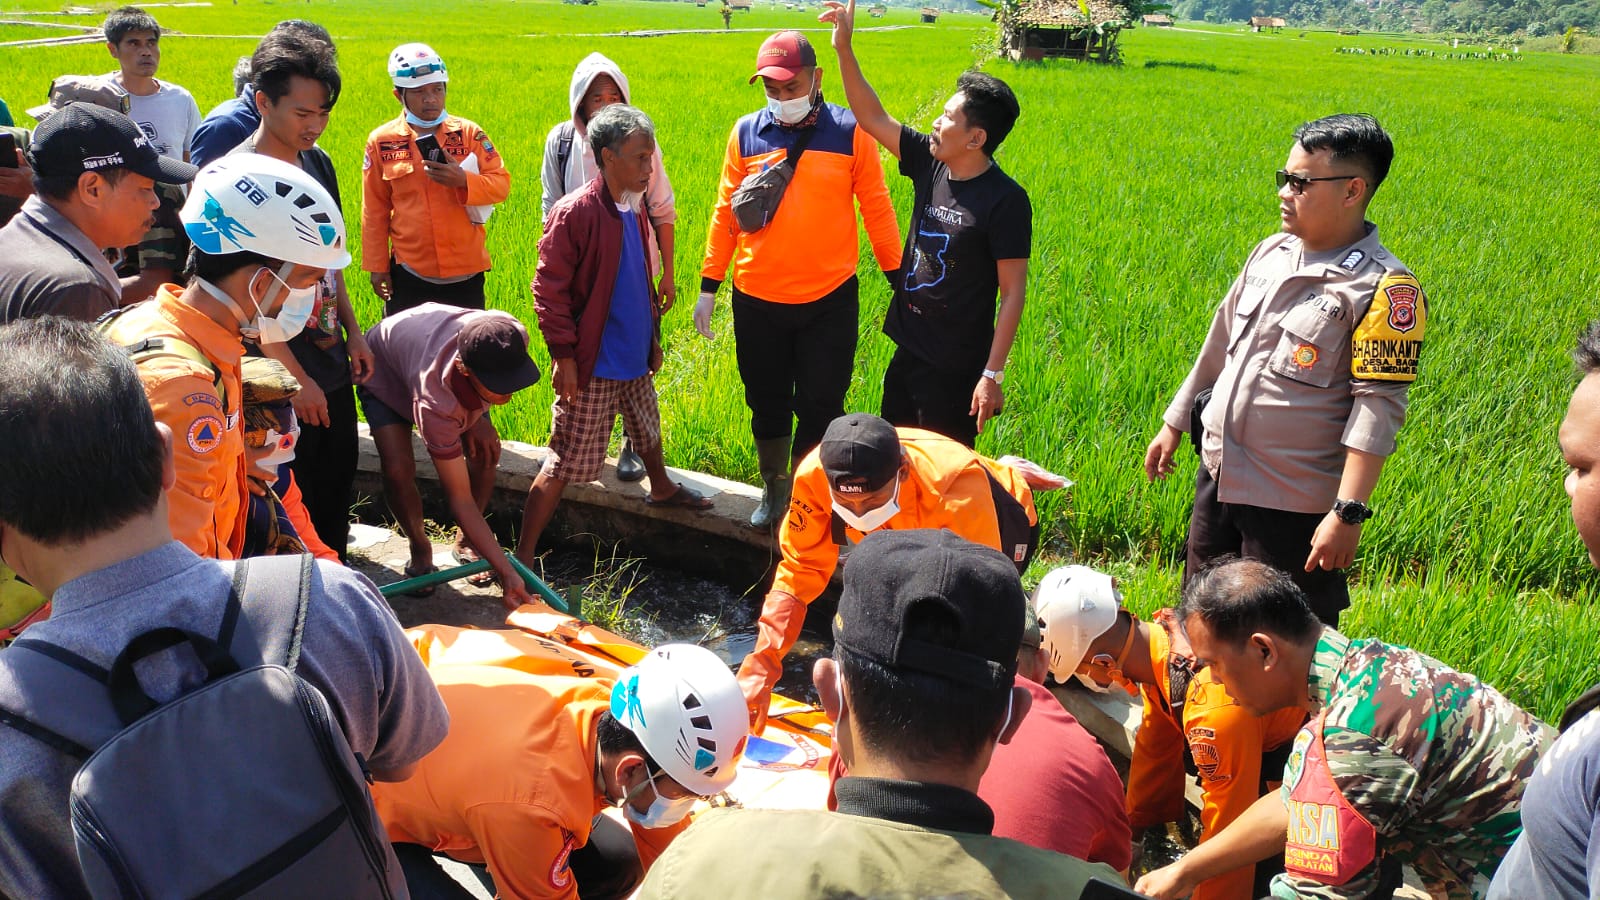 Seorang pria tua ditemukan tak bernyawa di sebuah selokan di dekat jembatan gantung Panyindangan, Dusun Baginda RT 03 RW 20, Desa Baginda Kecamatan Sumedang Selatan, Kabupaten Sumedang, Jawa Barat. Jabar Ekspres/Dedi Suhandi.